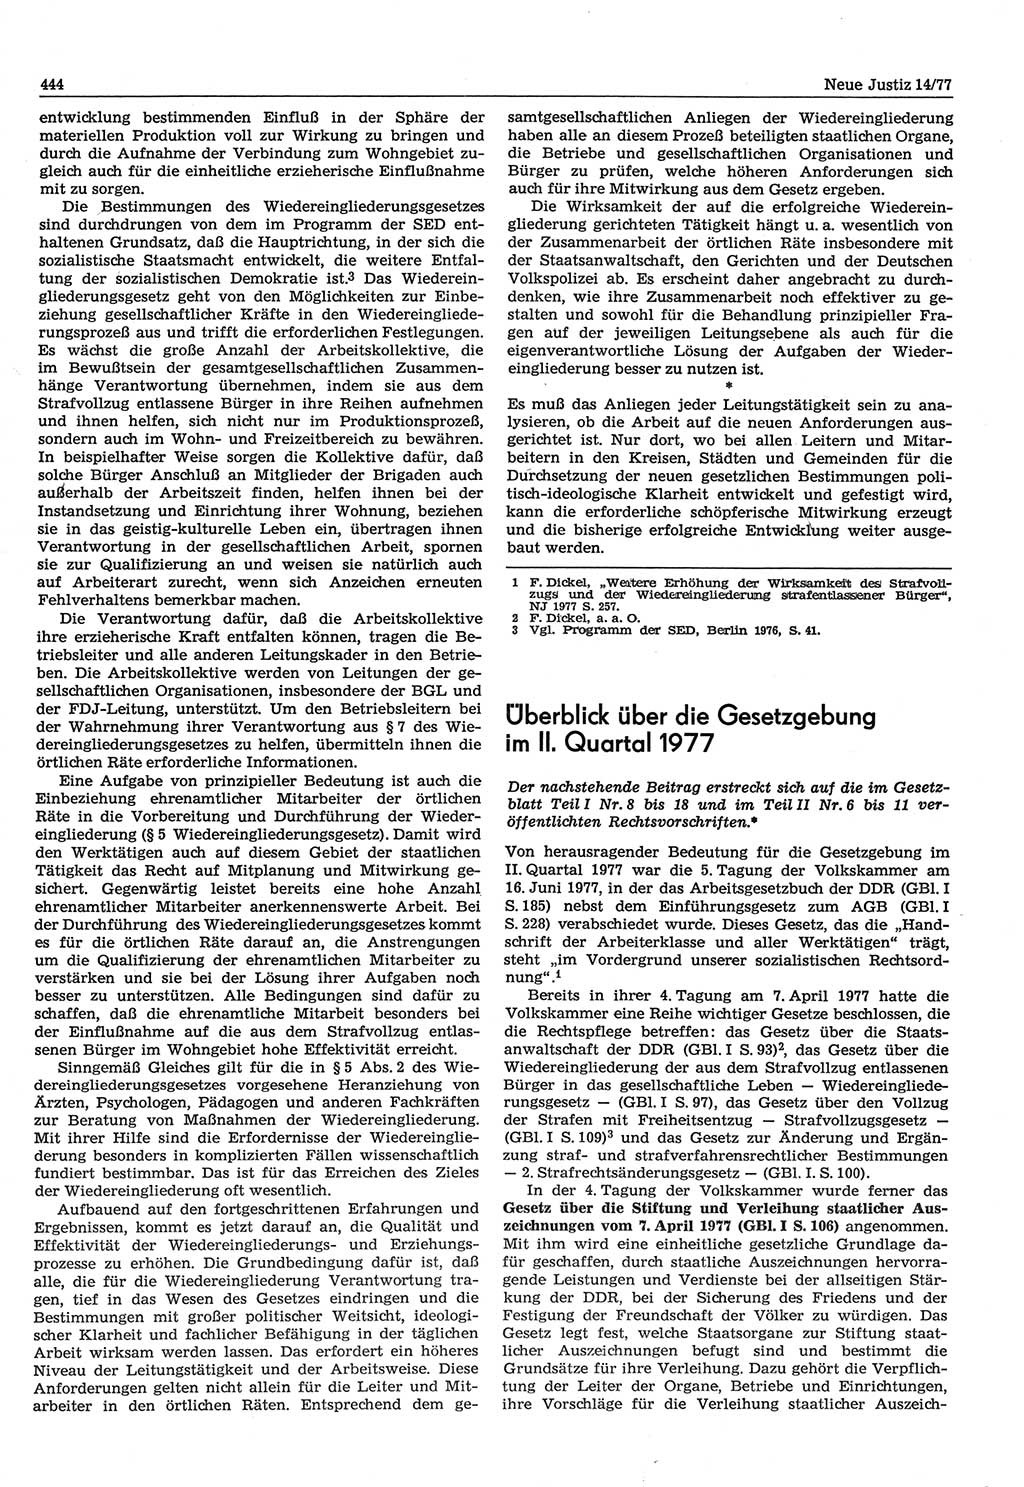 Neue Justiz (NJ), Zeitschrift für Recht und Rechtswissenschaft-Zeitschrift, sozialistisches Recht und Gesetzlichkeit, 31. Jahrgang 1977, Seite 444 (NJ DDR 1977, S. 444)